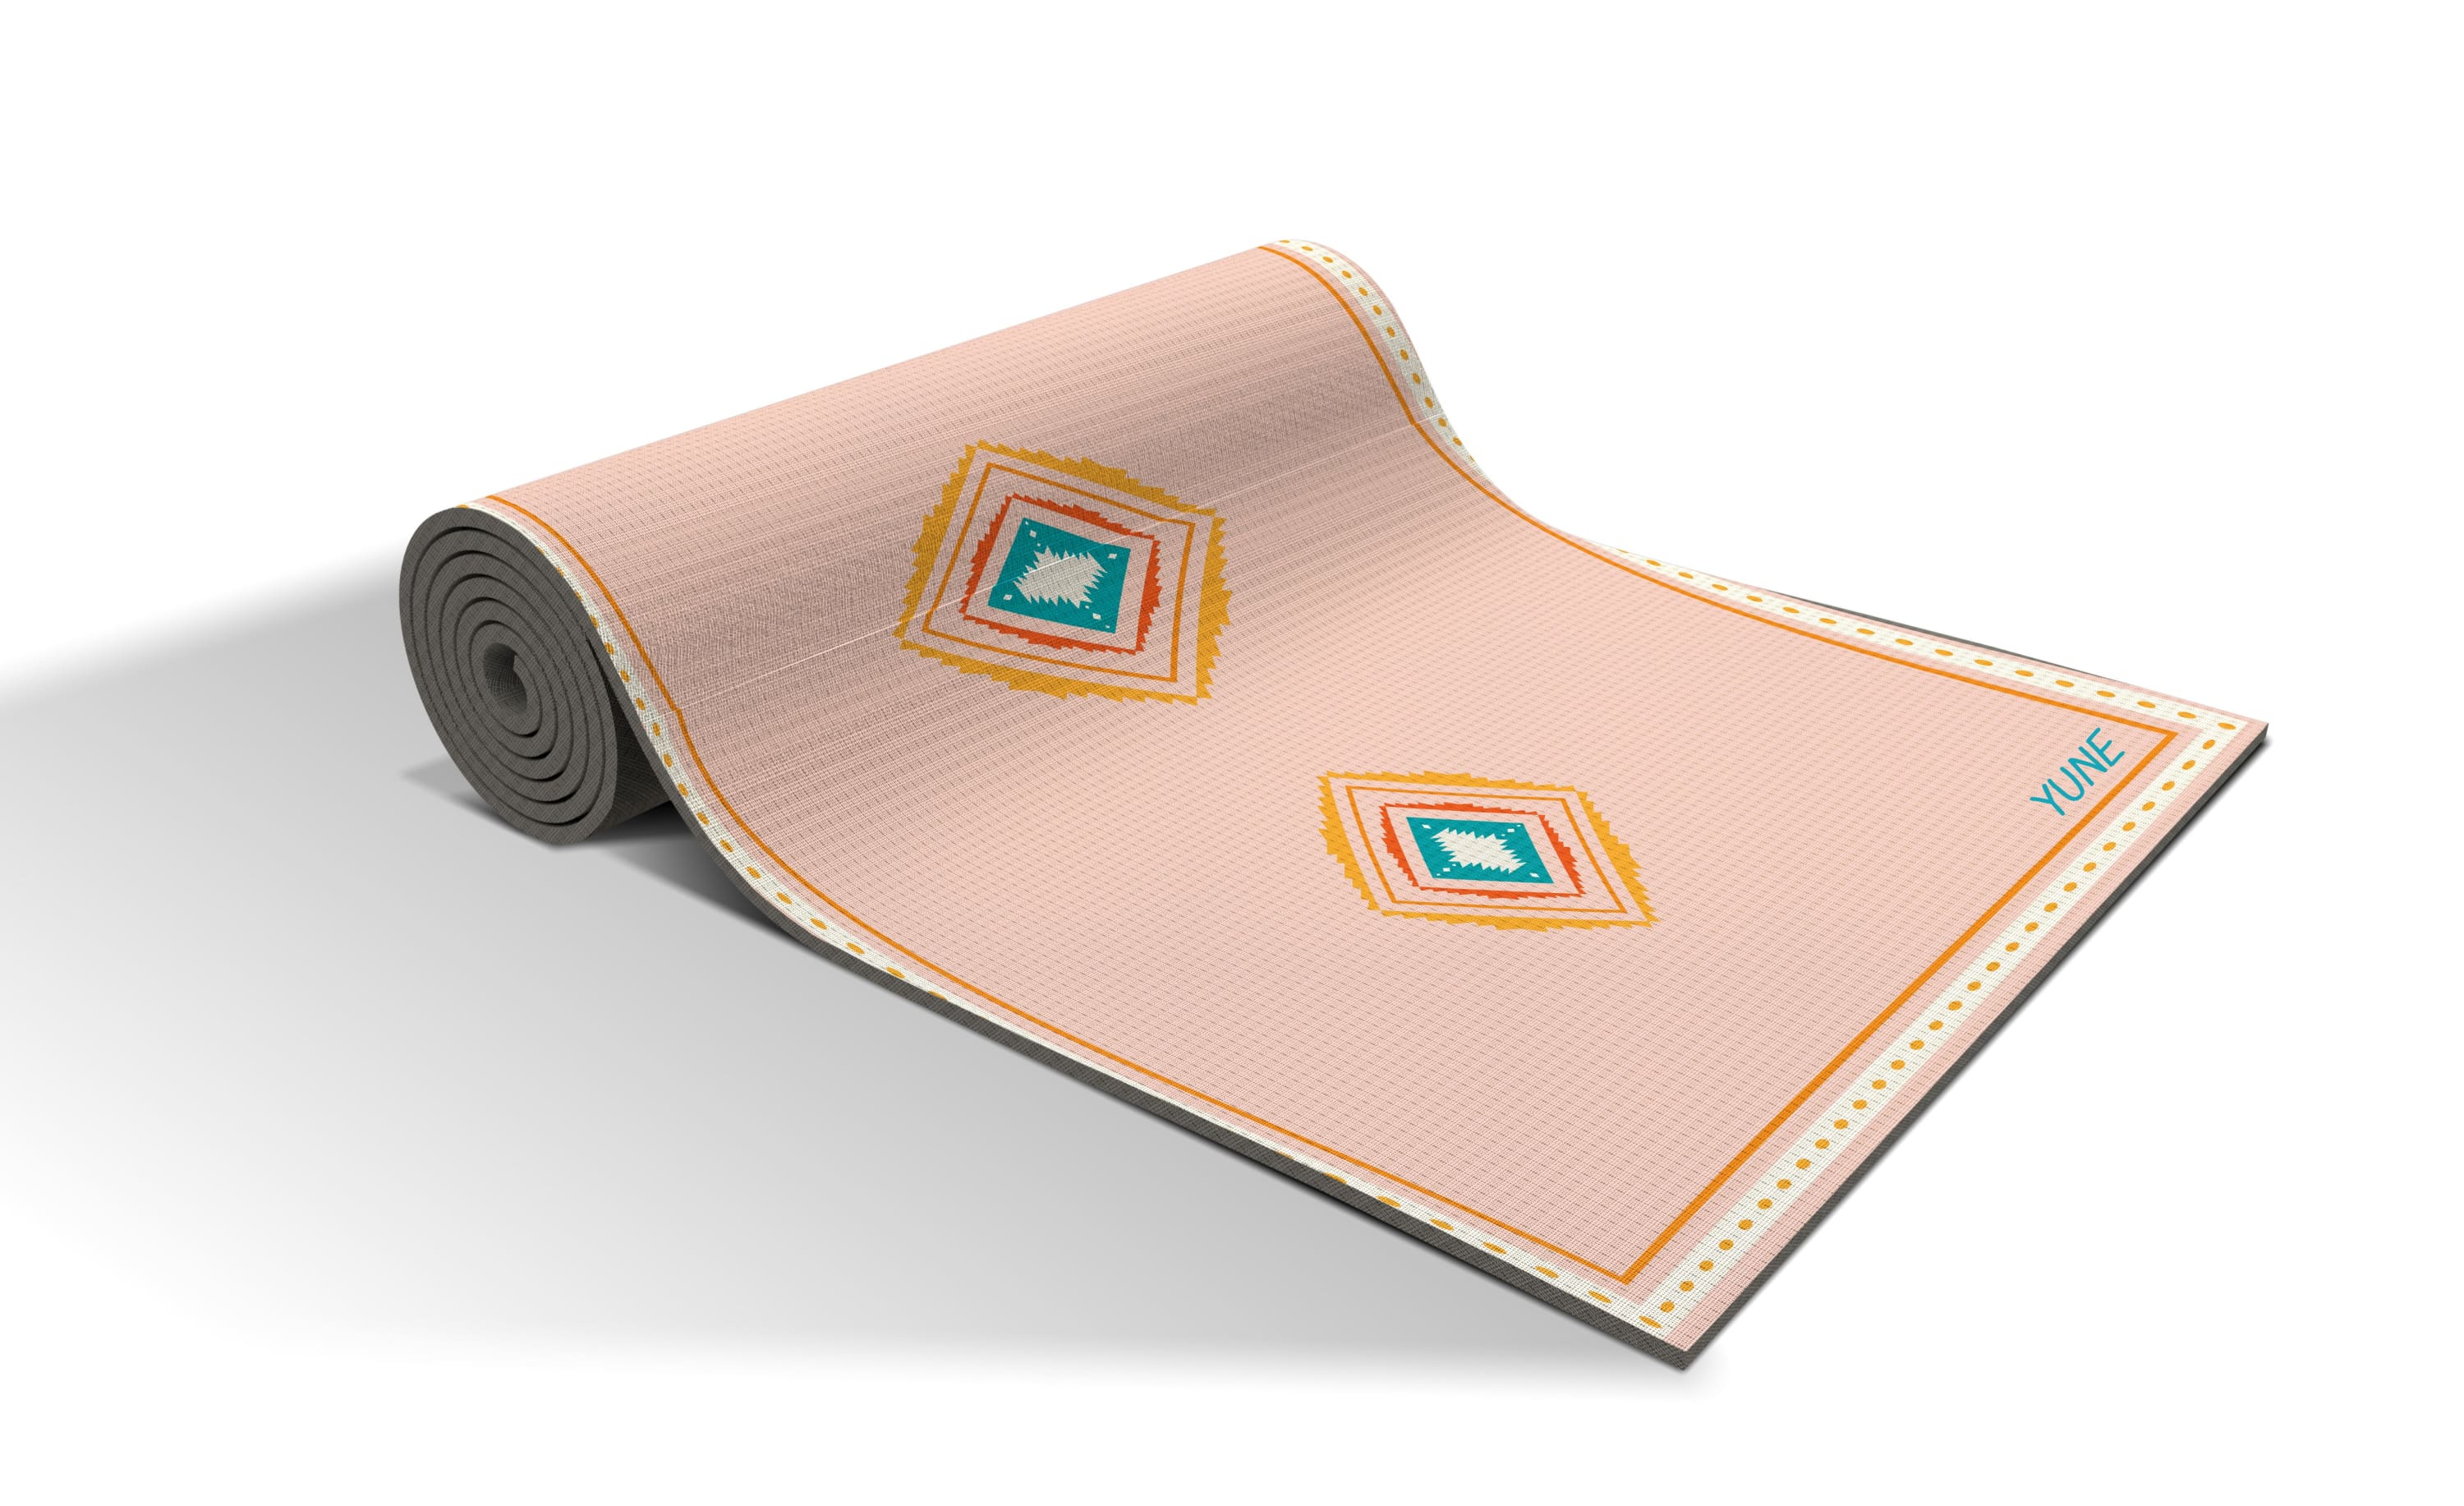 The PDX Carpet Yoga MatThe PDX Carpet Yoga Mat